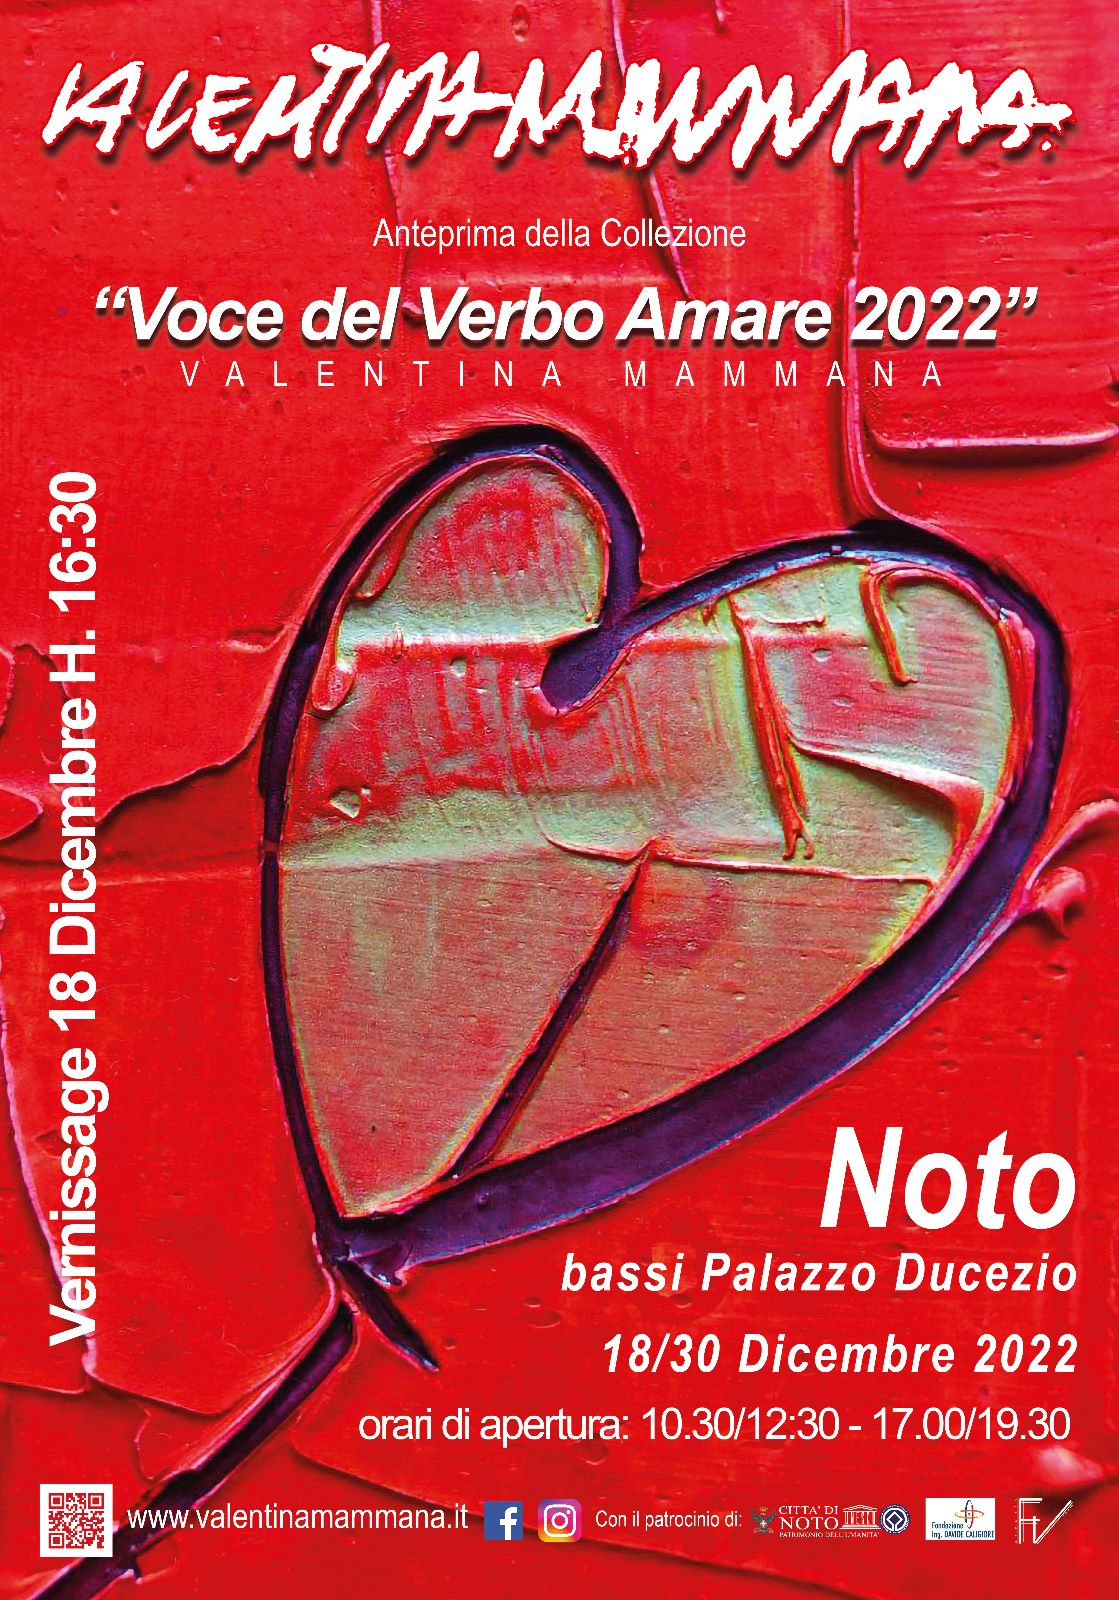 Valentina Mammana - Voce del Verbo Amare 2022